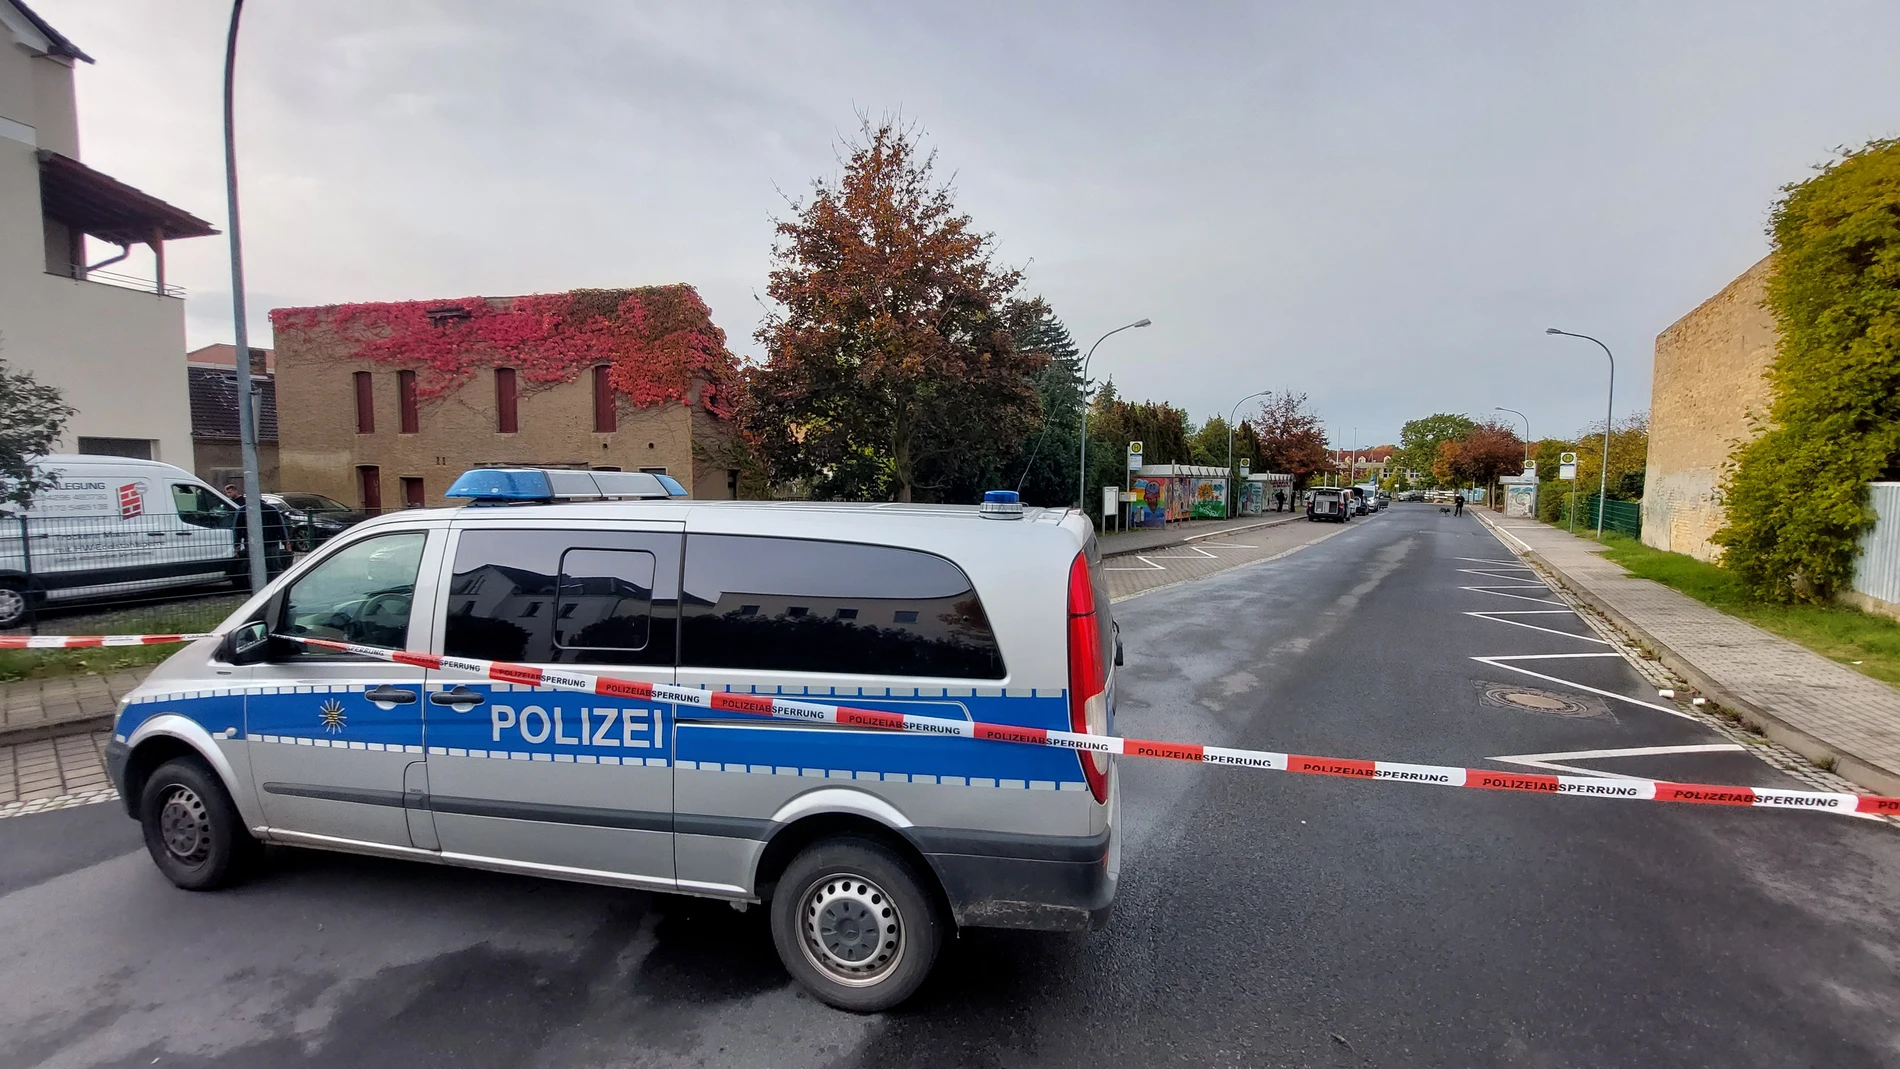 Alemania.- La Policía de Alemania detiene a un hombre que presuntamente planeaba un atentado terrorista